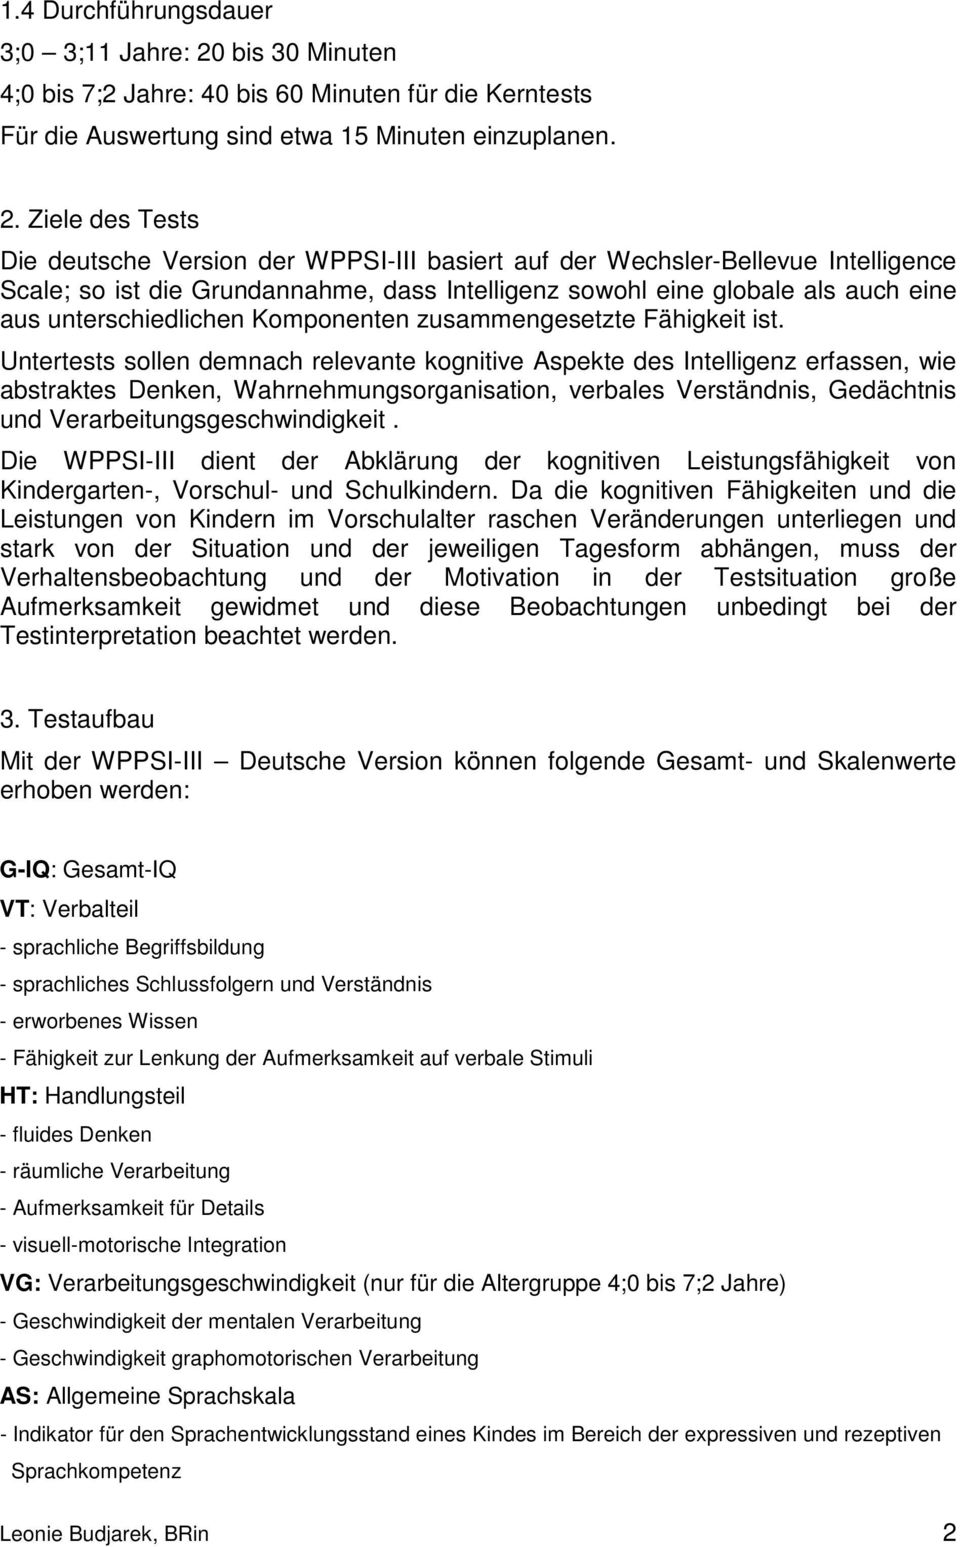 Ziele des Tests Die deutsche Version der WPPSI-III basiert auf der Wechsler-Bellevue Intelligence Scale; so ist die Grundannahme, dass Intelligenz sowohl eine globale als auch eine aus